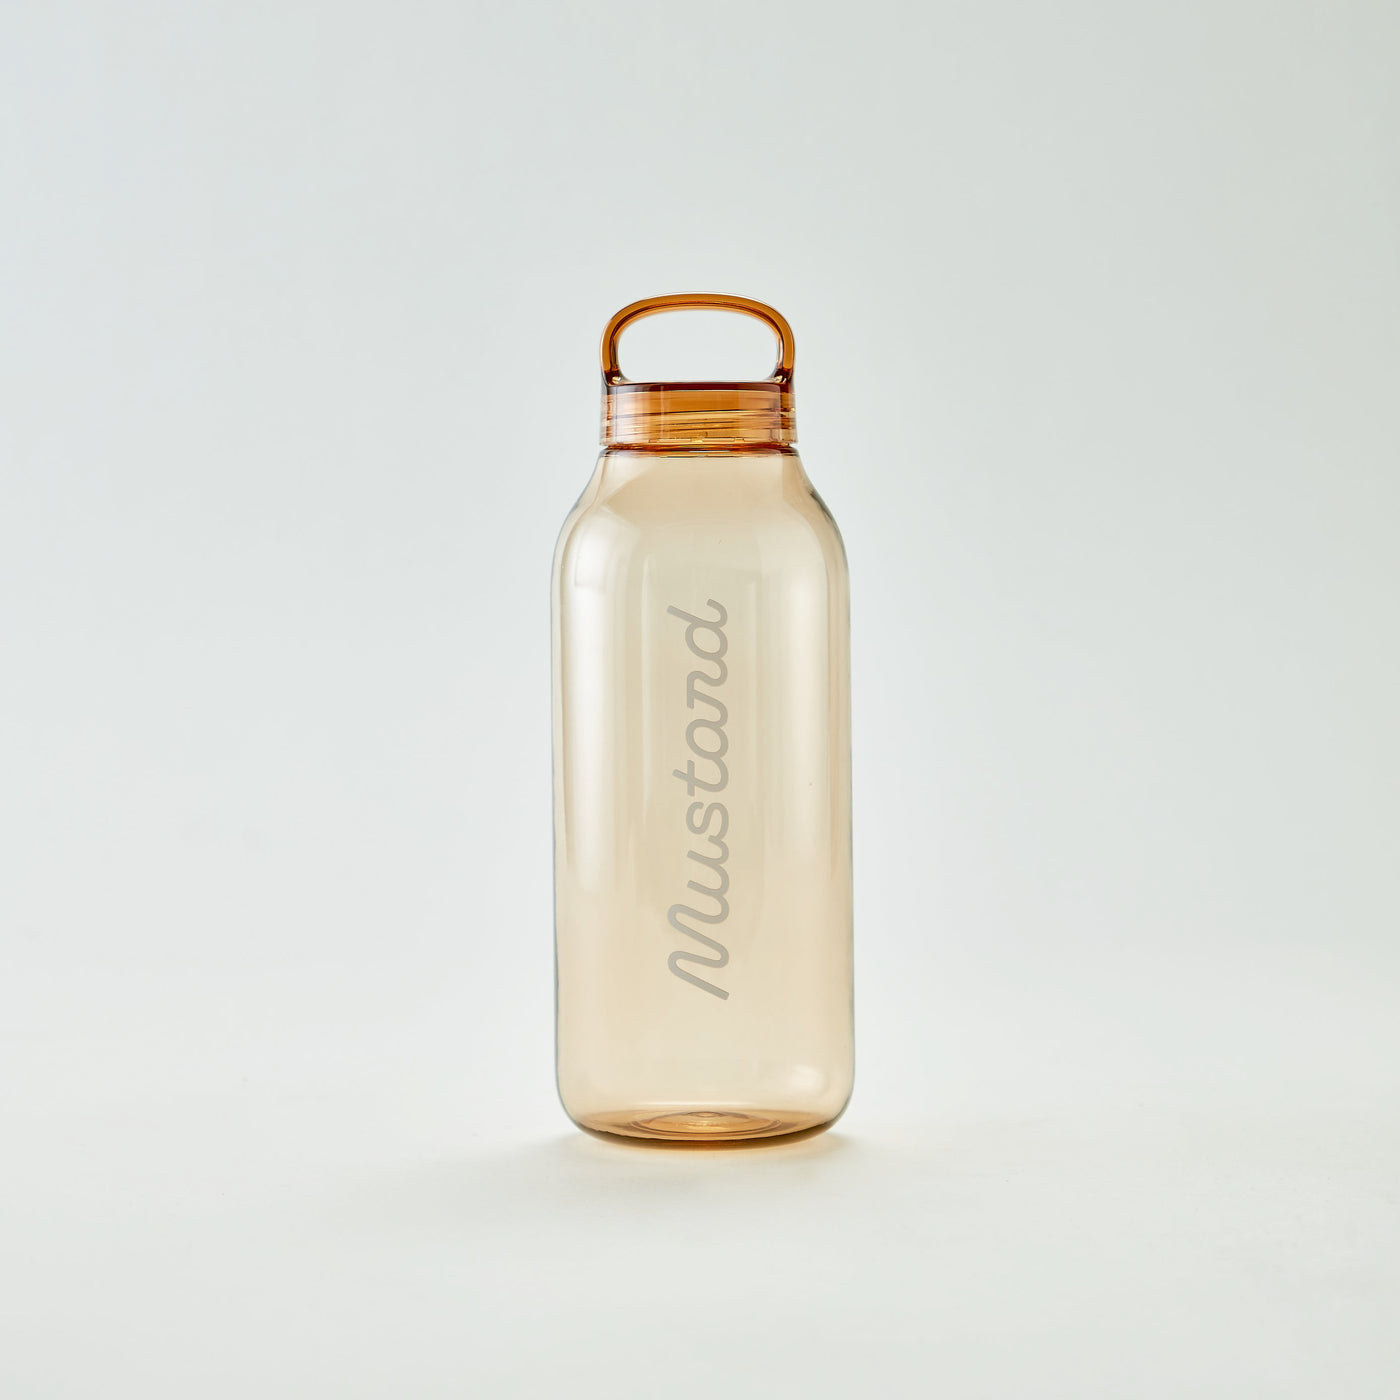 Mustard x Kinto Water Bottle